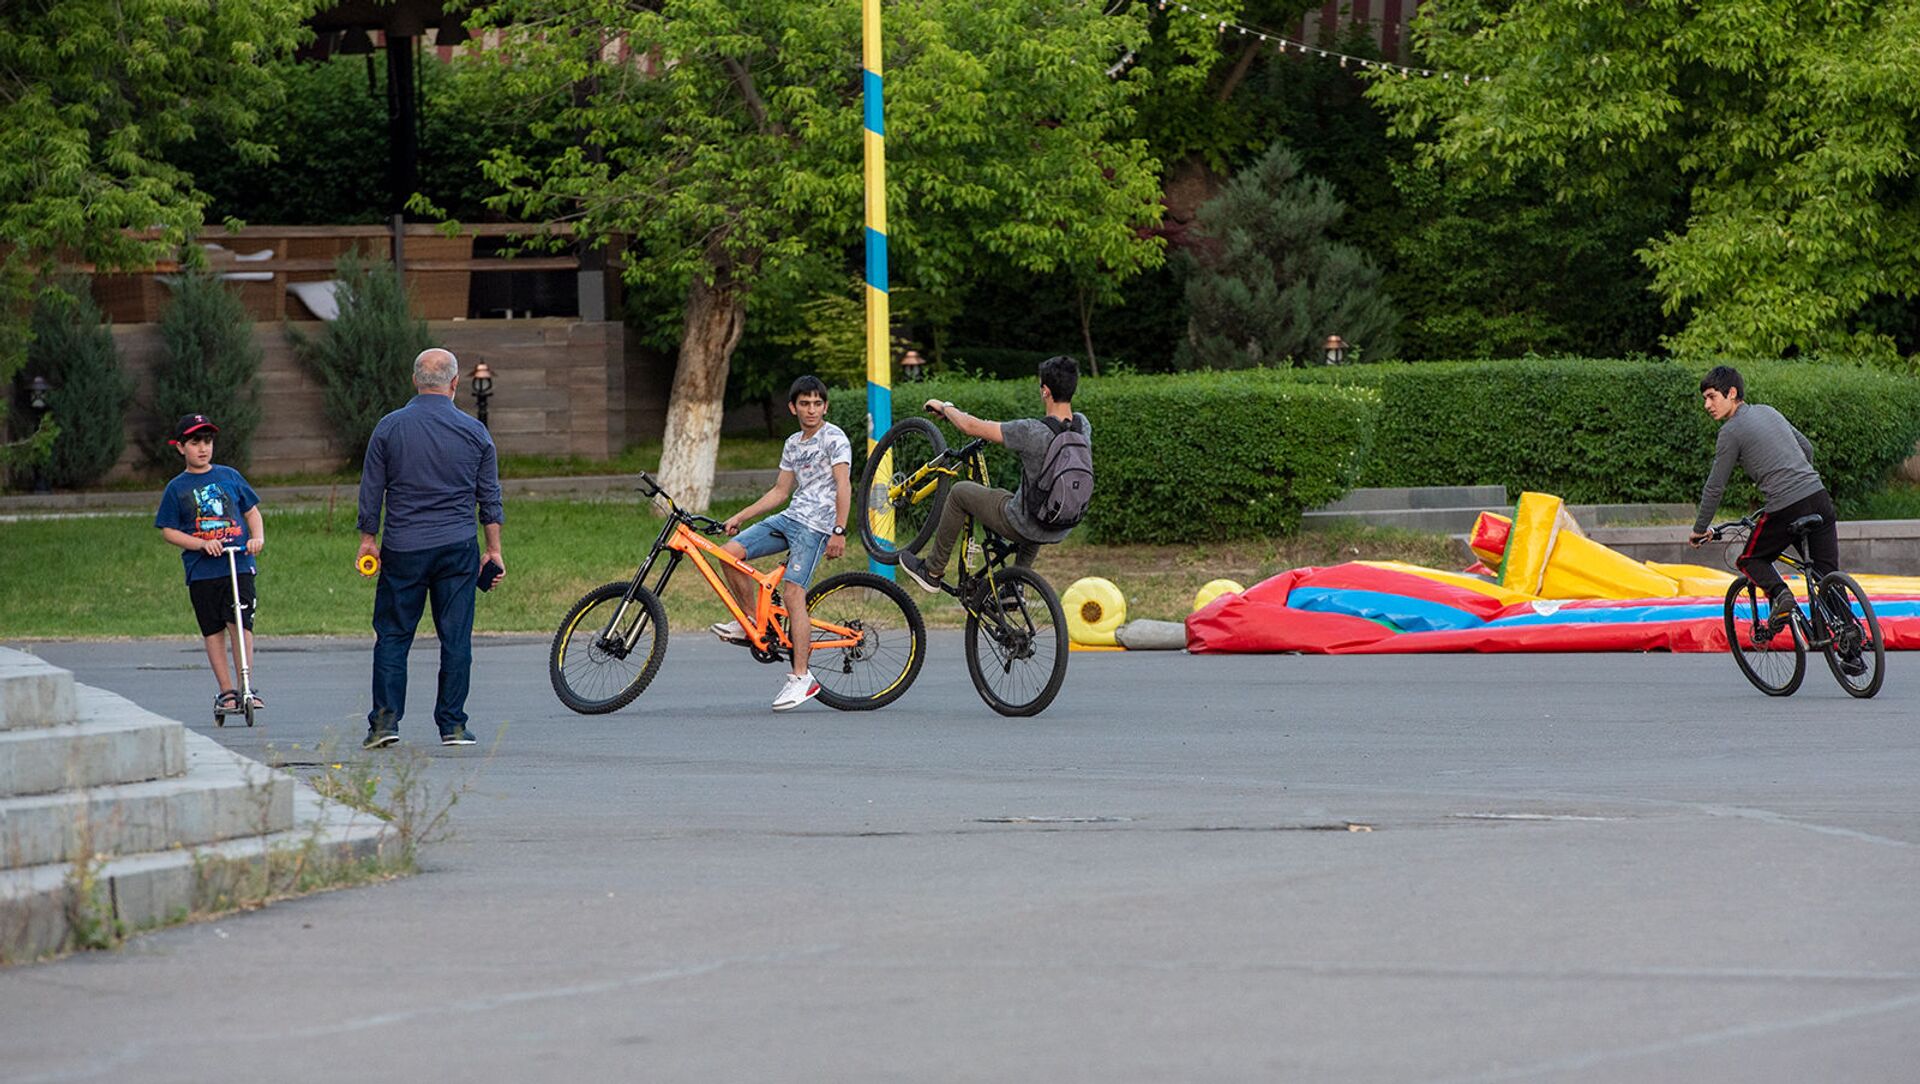 Ребята катаются на велосипедах - Sputnik Արմենիա, 1920, 01.07.2021